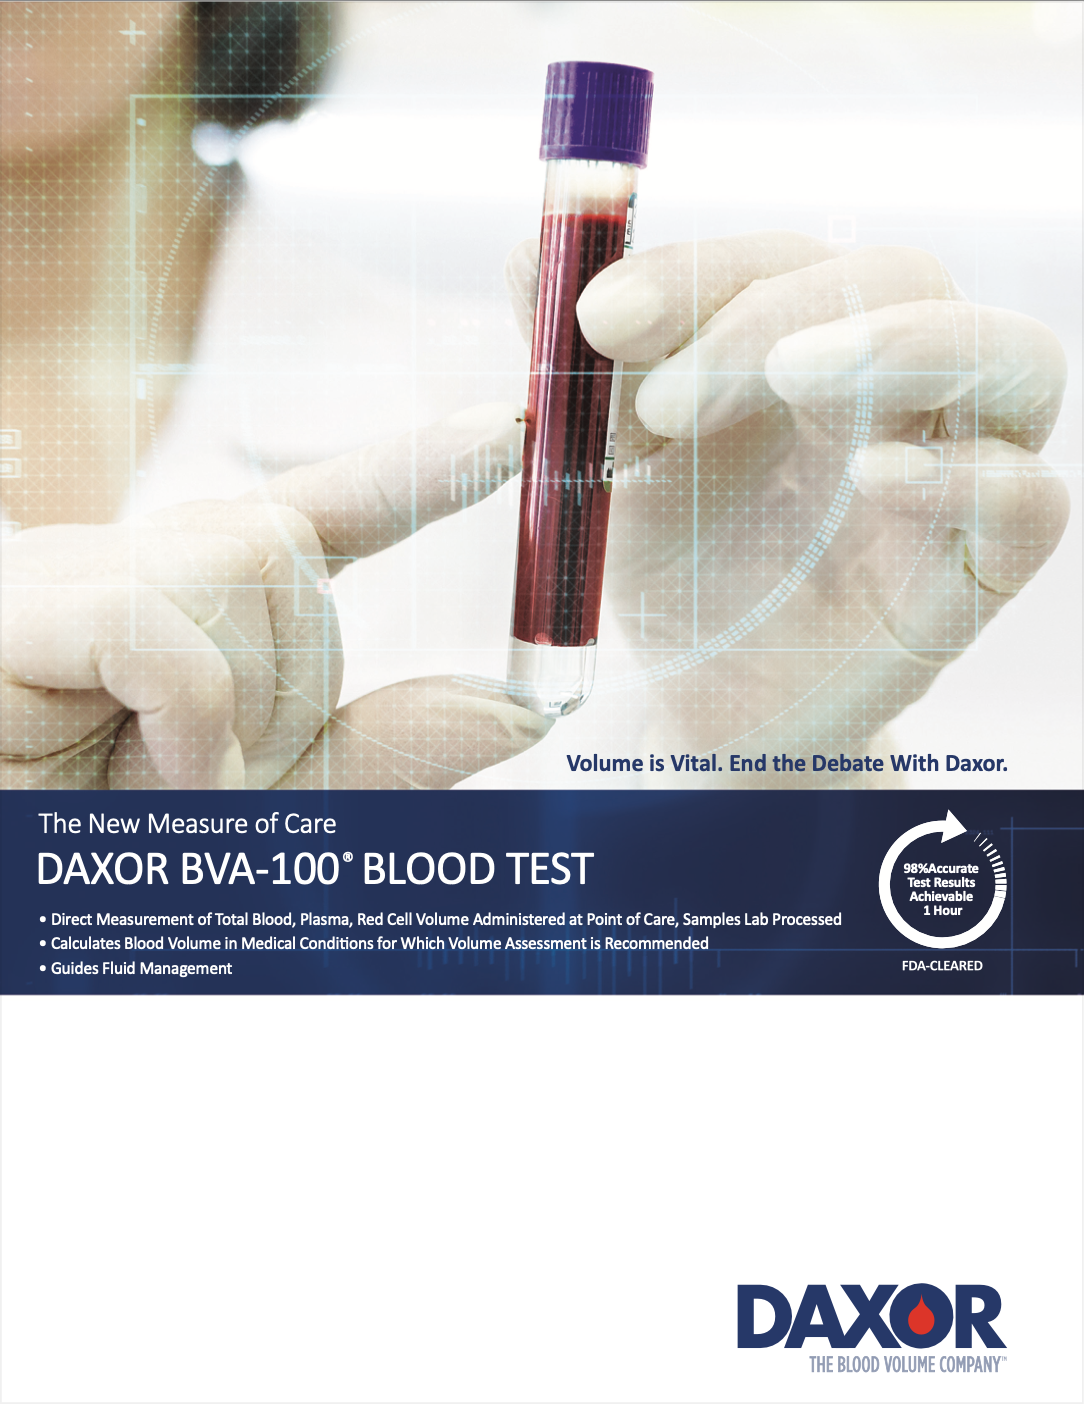 Imagen: El BVA-100 es el primer análisis de sangre de diagnóstico aprobado por la FDA para la cuantificación del estado del volumen de sangre (Fotografía cortesía de Daxor Corporation)